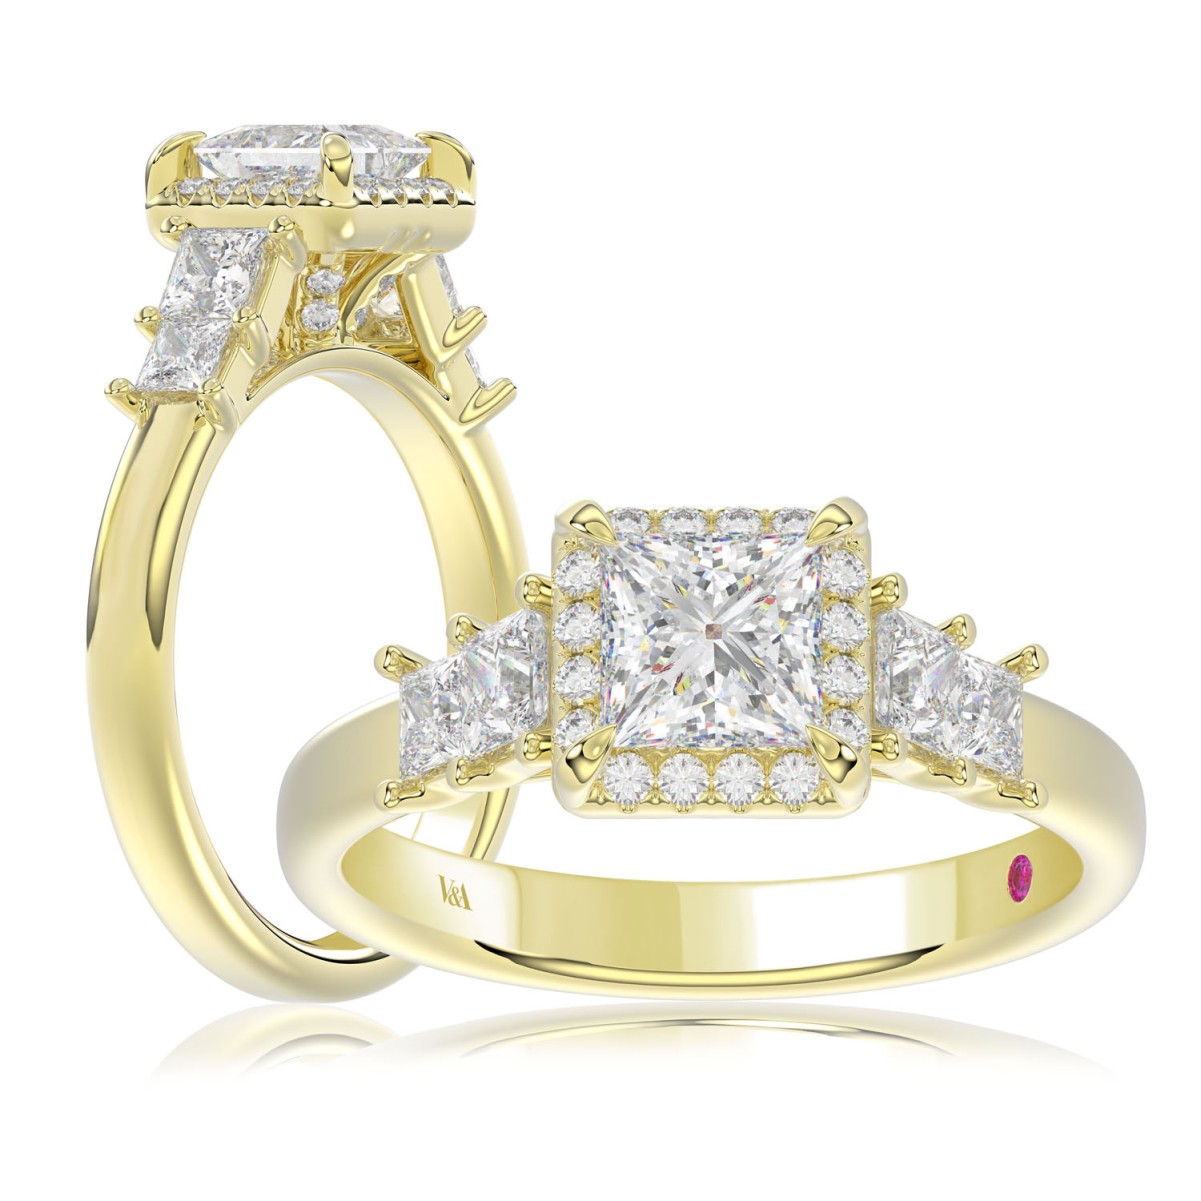 18K YELLOW GOLD 3/4CT ROUND/PRINCESS DIAMOND LADIES RING (CENTER STONE PRINCESS DIAMOND 3/4CT)